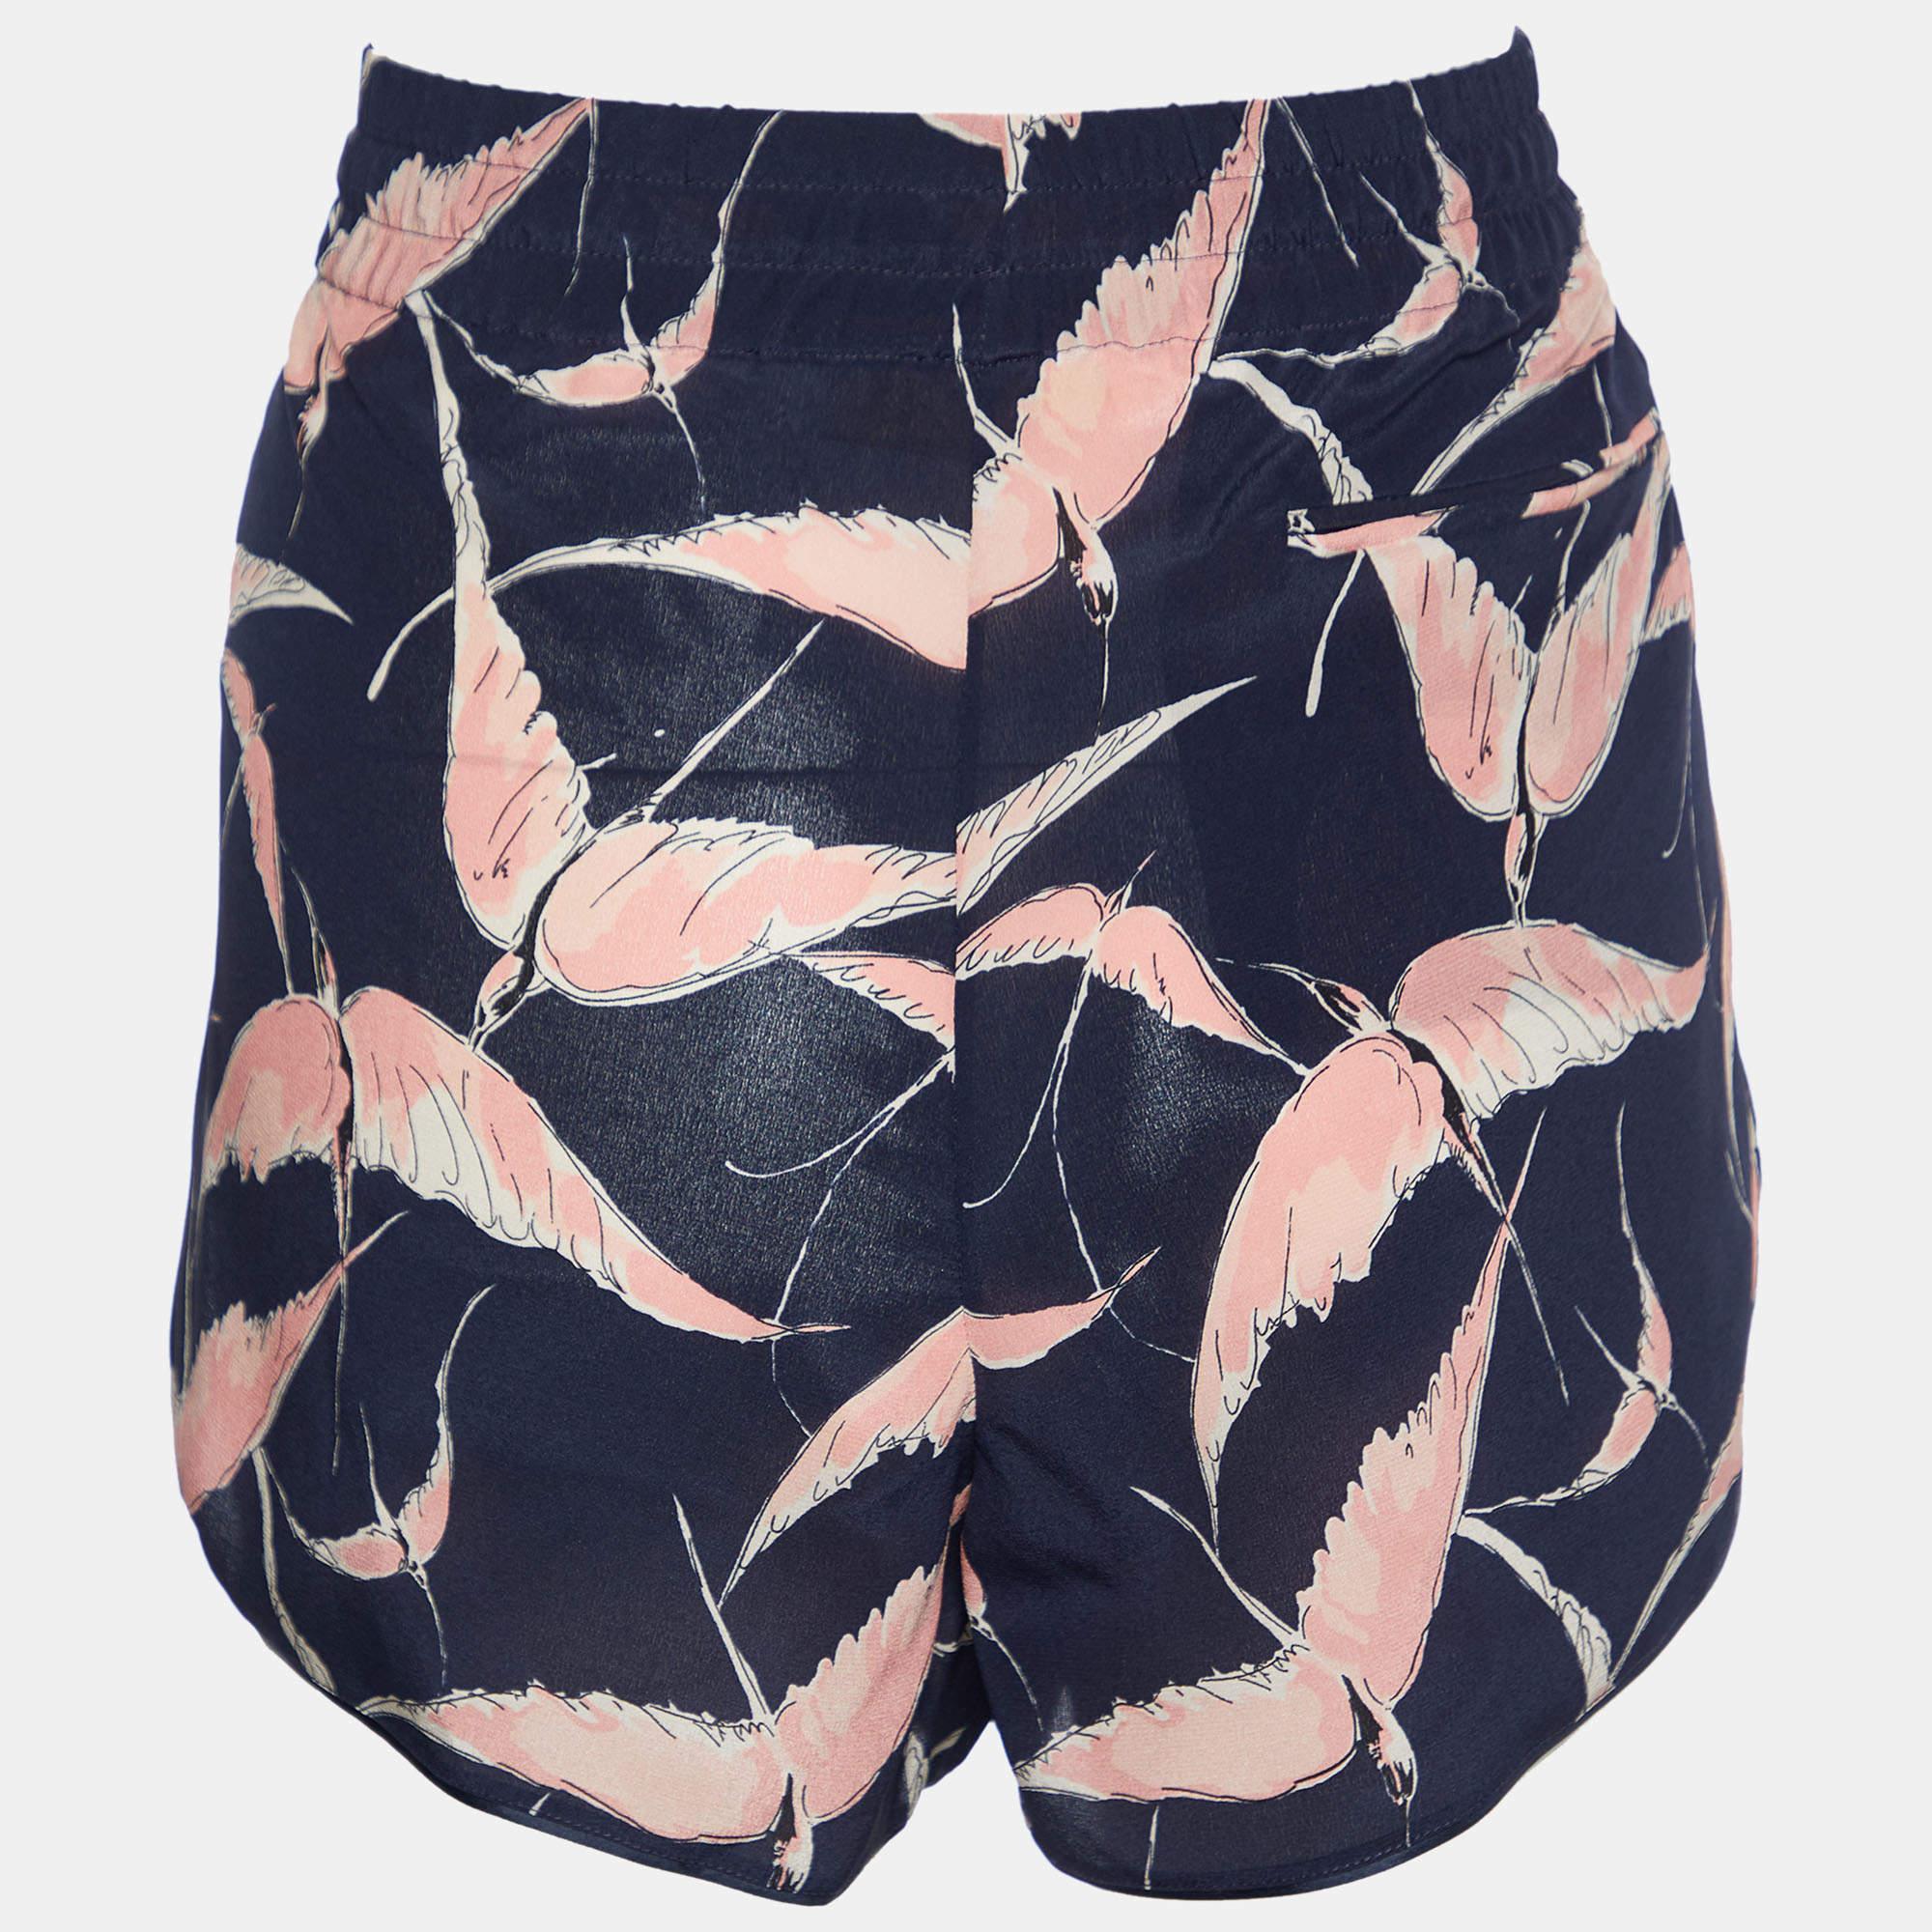 Les vacances à la plage nécessitent une paire de shorts élégants comme celui-ci. Cousu à l'aide d'un tissu de haute qualité, ce short est agrémenté de détails classiques et présente une superbe longueur. A porter avec des T-shirts.

Comprend :